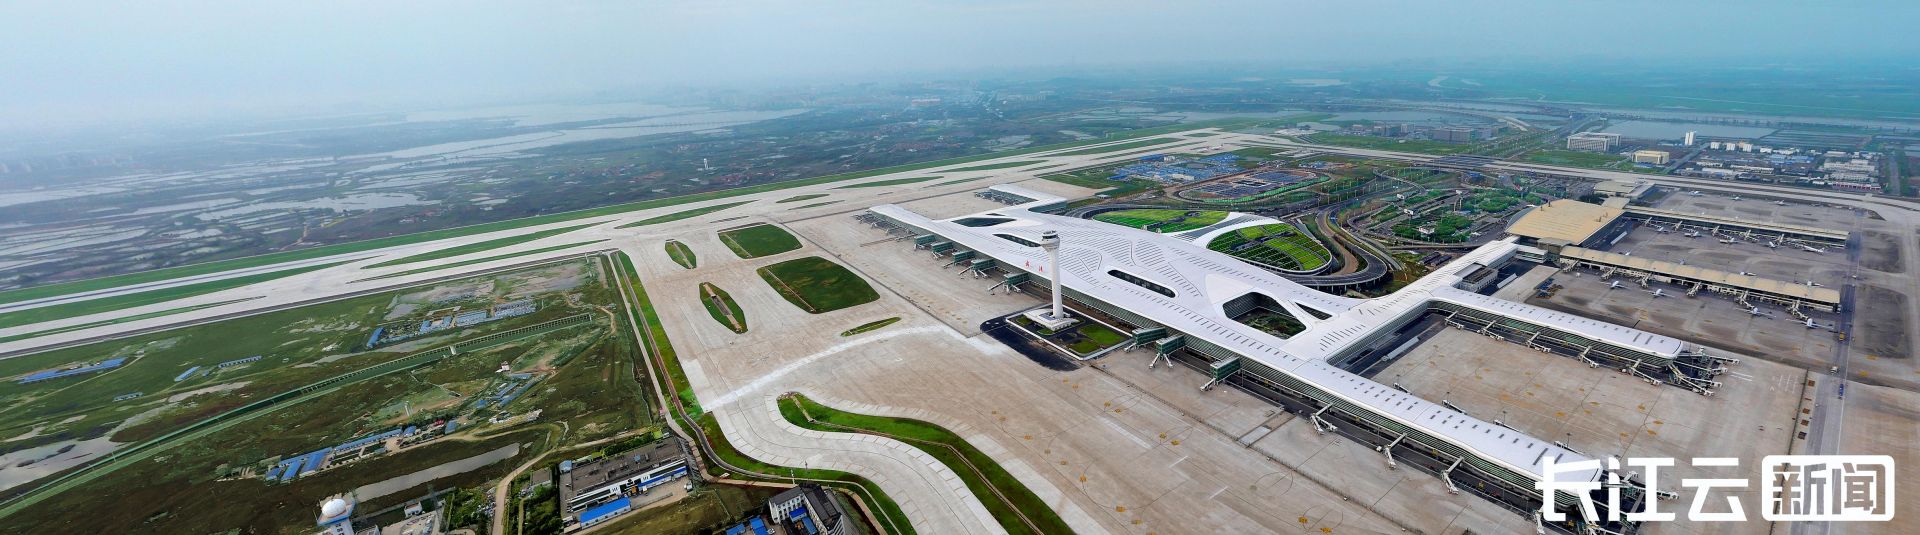 大幅扩容武汉天河机场高峰小时航班时刻容量达55架次